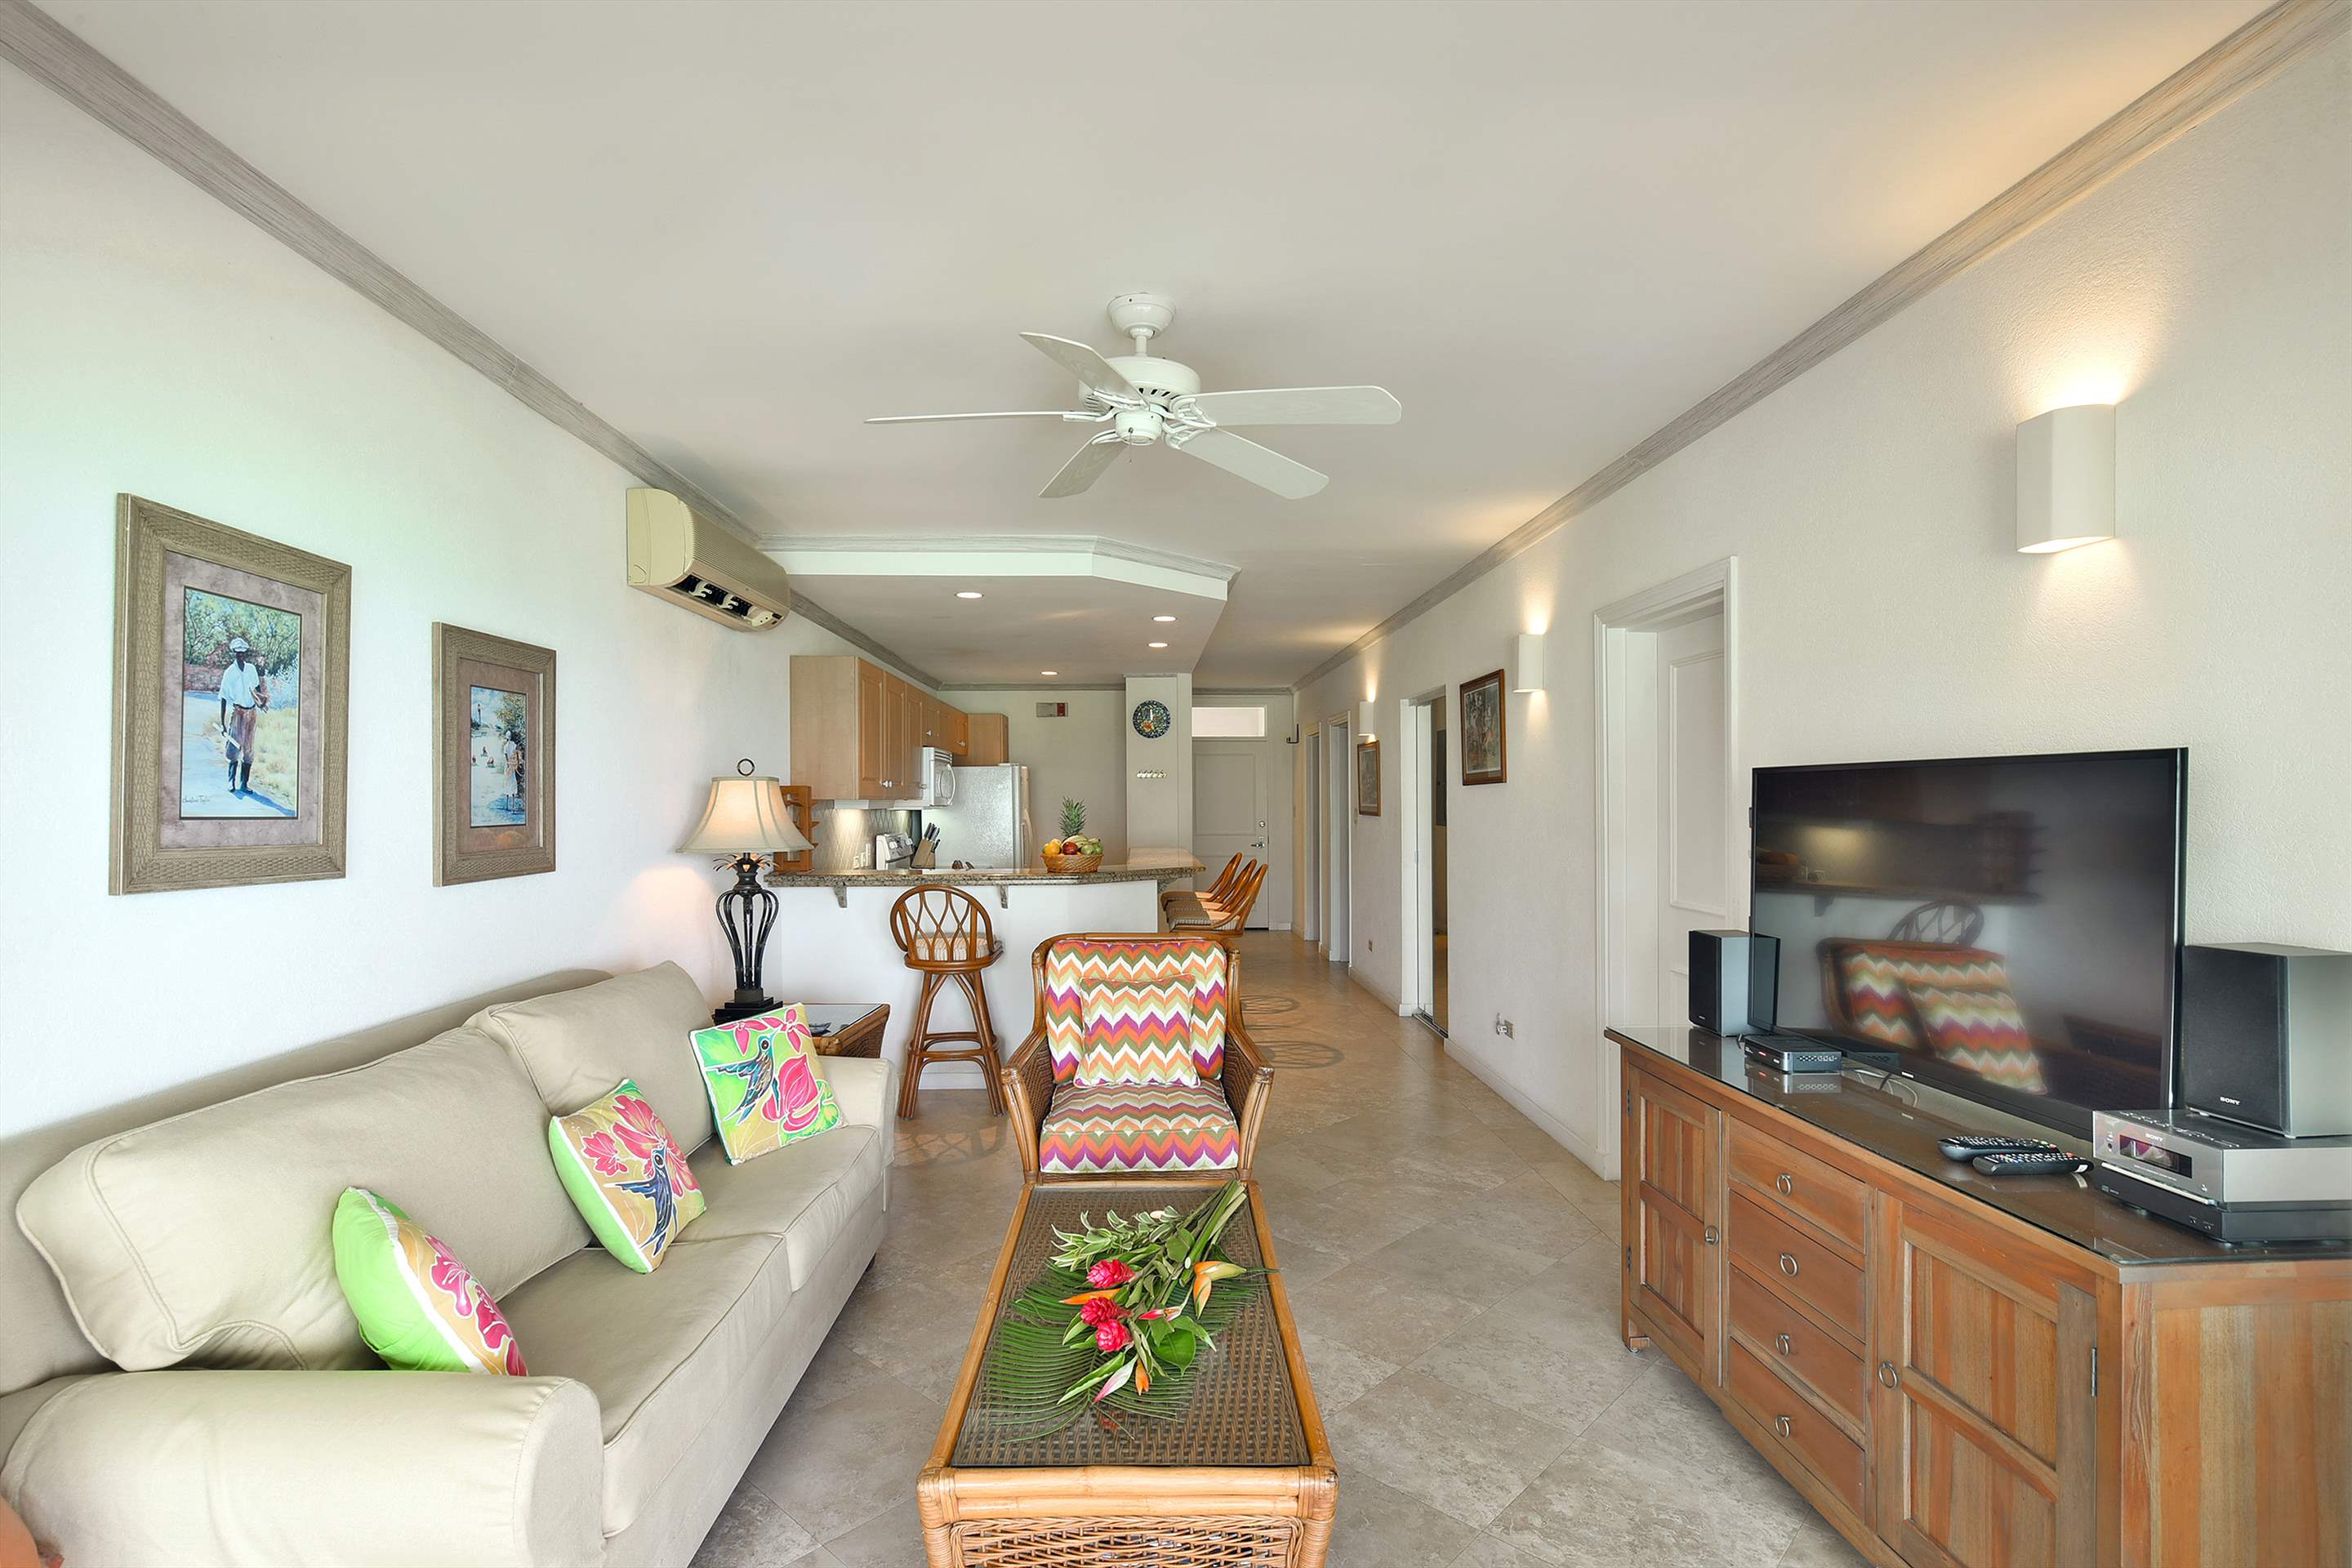 Maxwell Beach Villas 302, 2 bedroom, 2 bedroom apartment in St. Lawrence Gap & South Coast, Barbados Photo #5